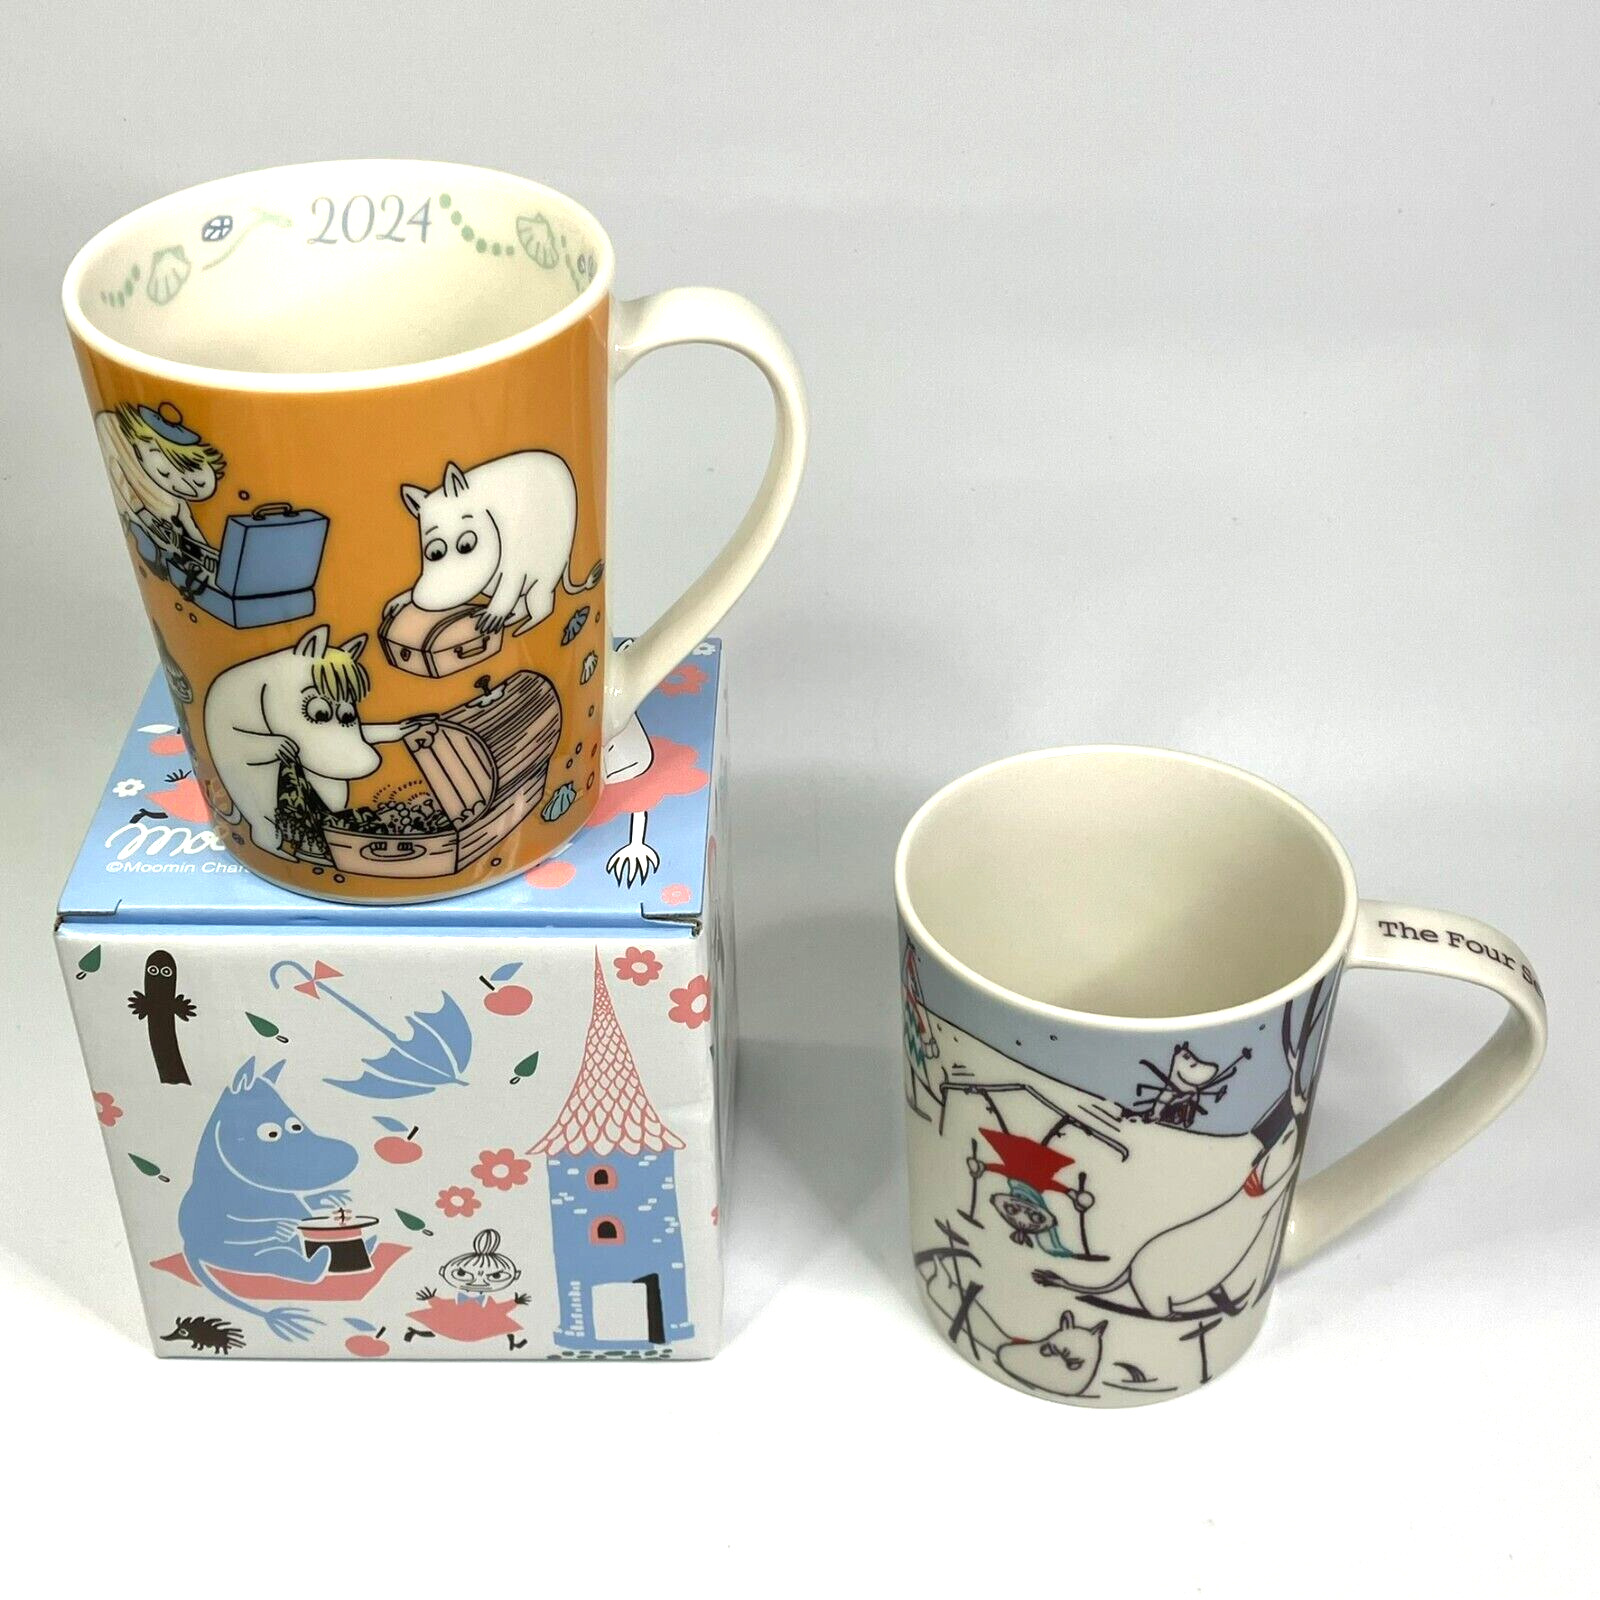 Moomins New Year 2024 Mug & 4Seasons of Moominvalley WINTER Mug by